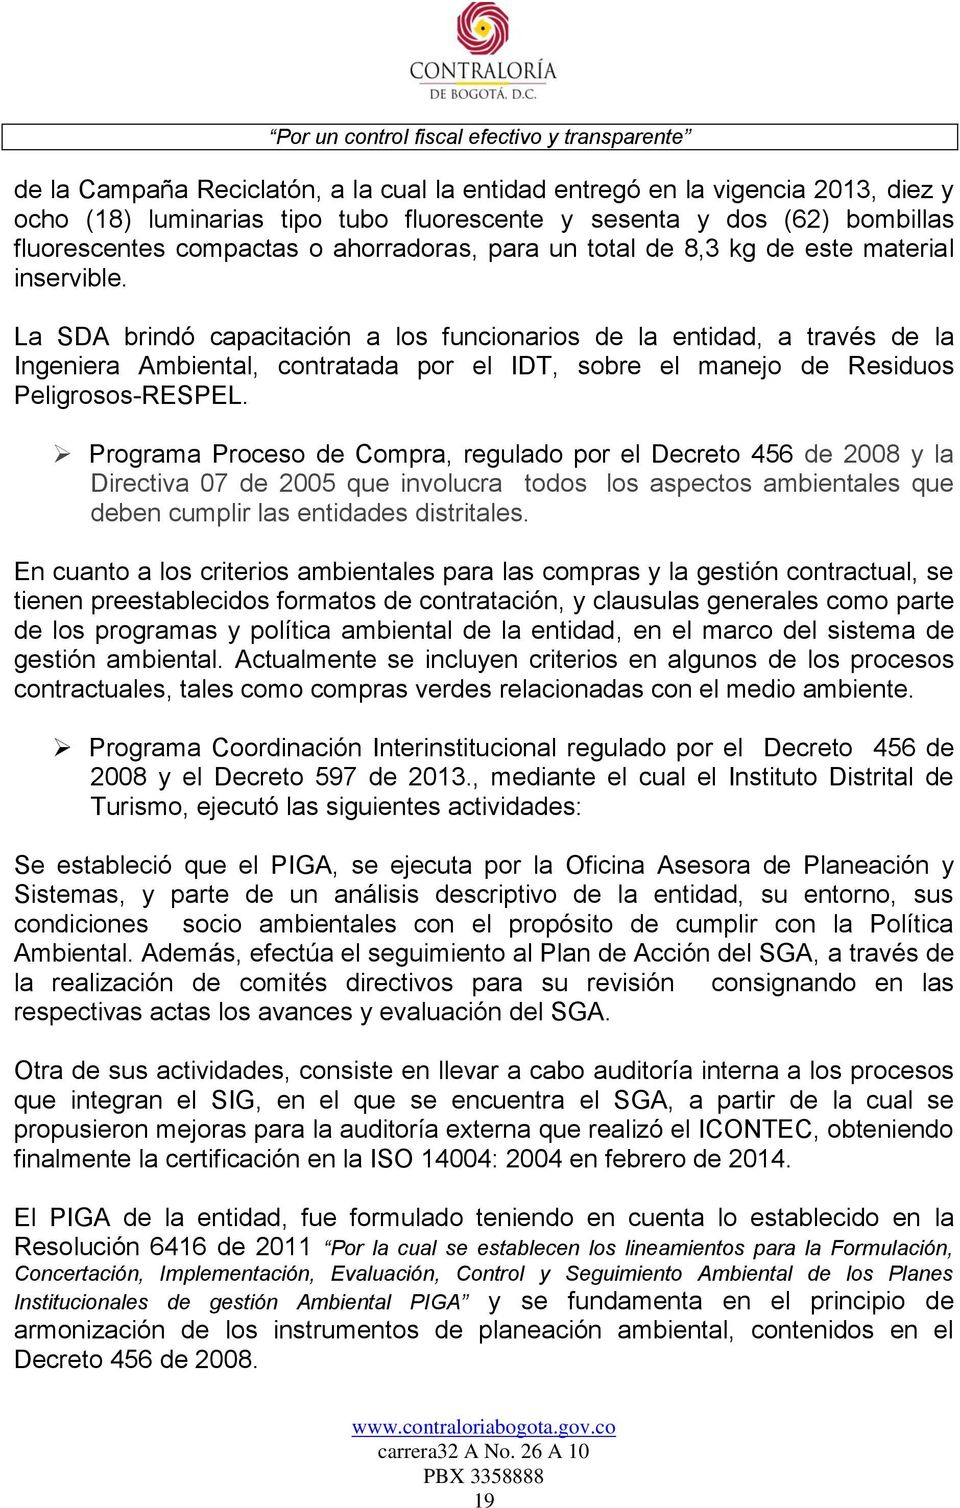 La SDA brindó capacitación a los funcionarios de la entidad, a través de la Ingeniera Ambiental, contratada por el IDT, sobre el manejo de Residuos Peligrosos-RESPEL.